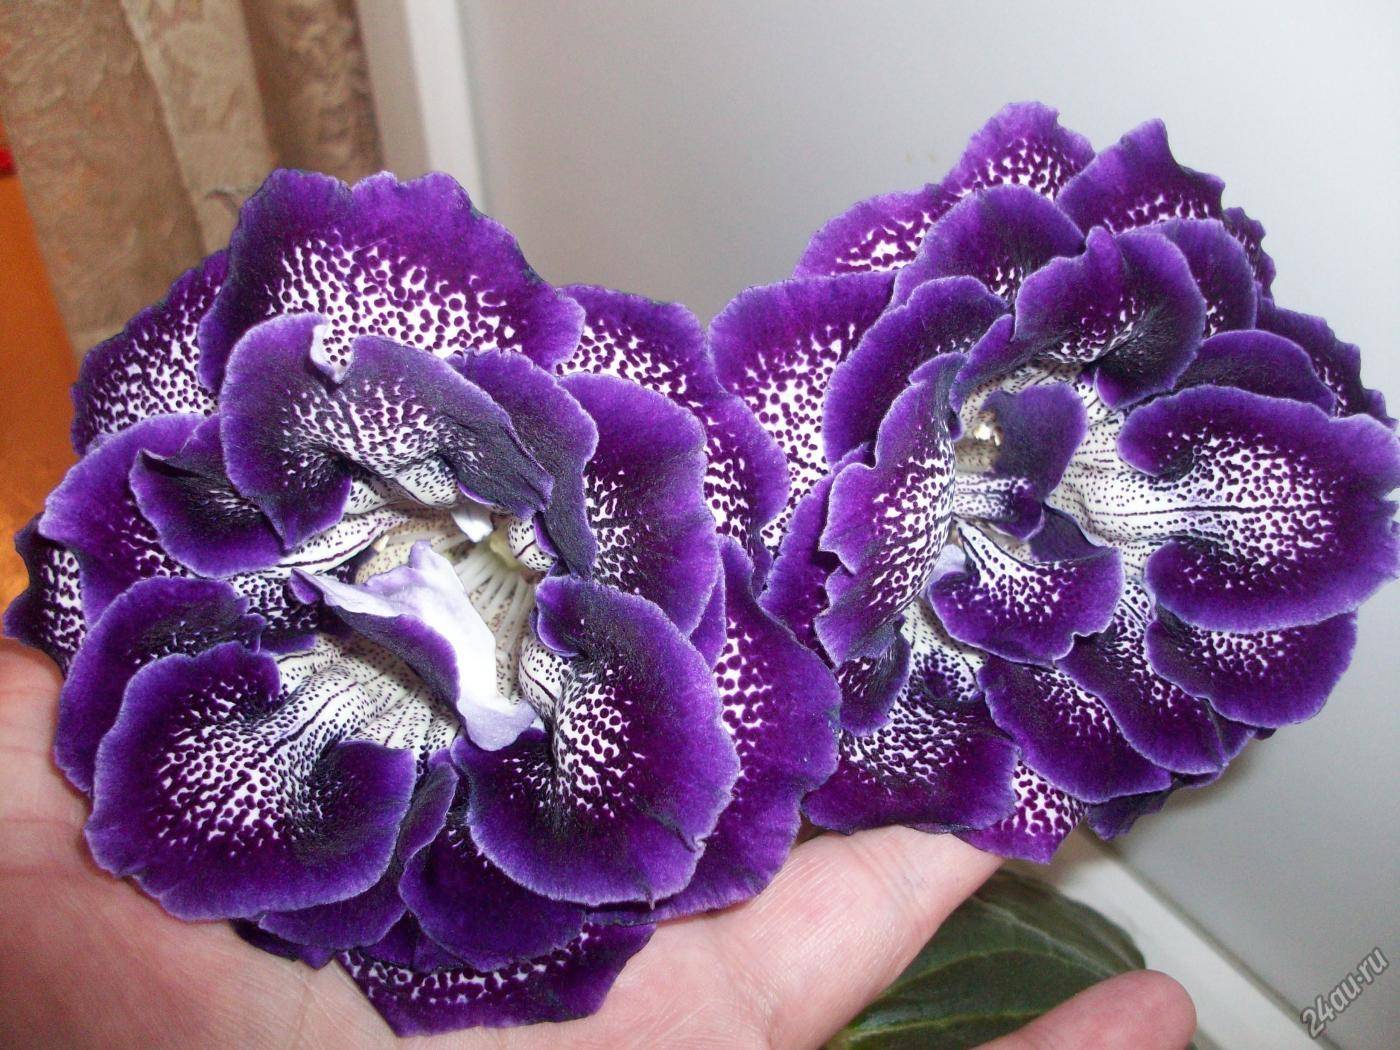 Невероятно красивый цветок — глоксиния